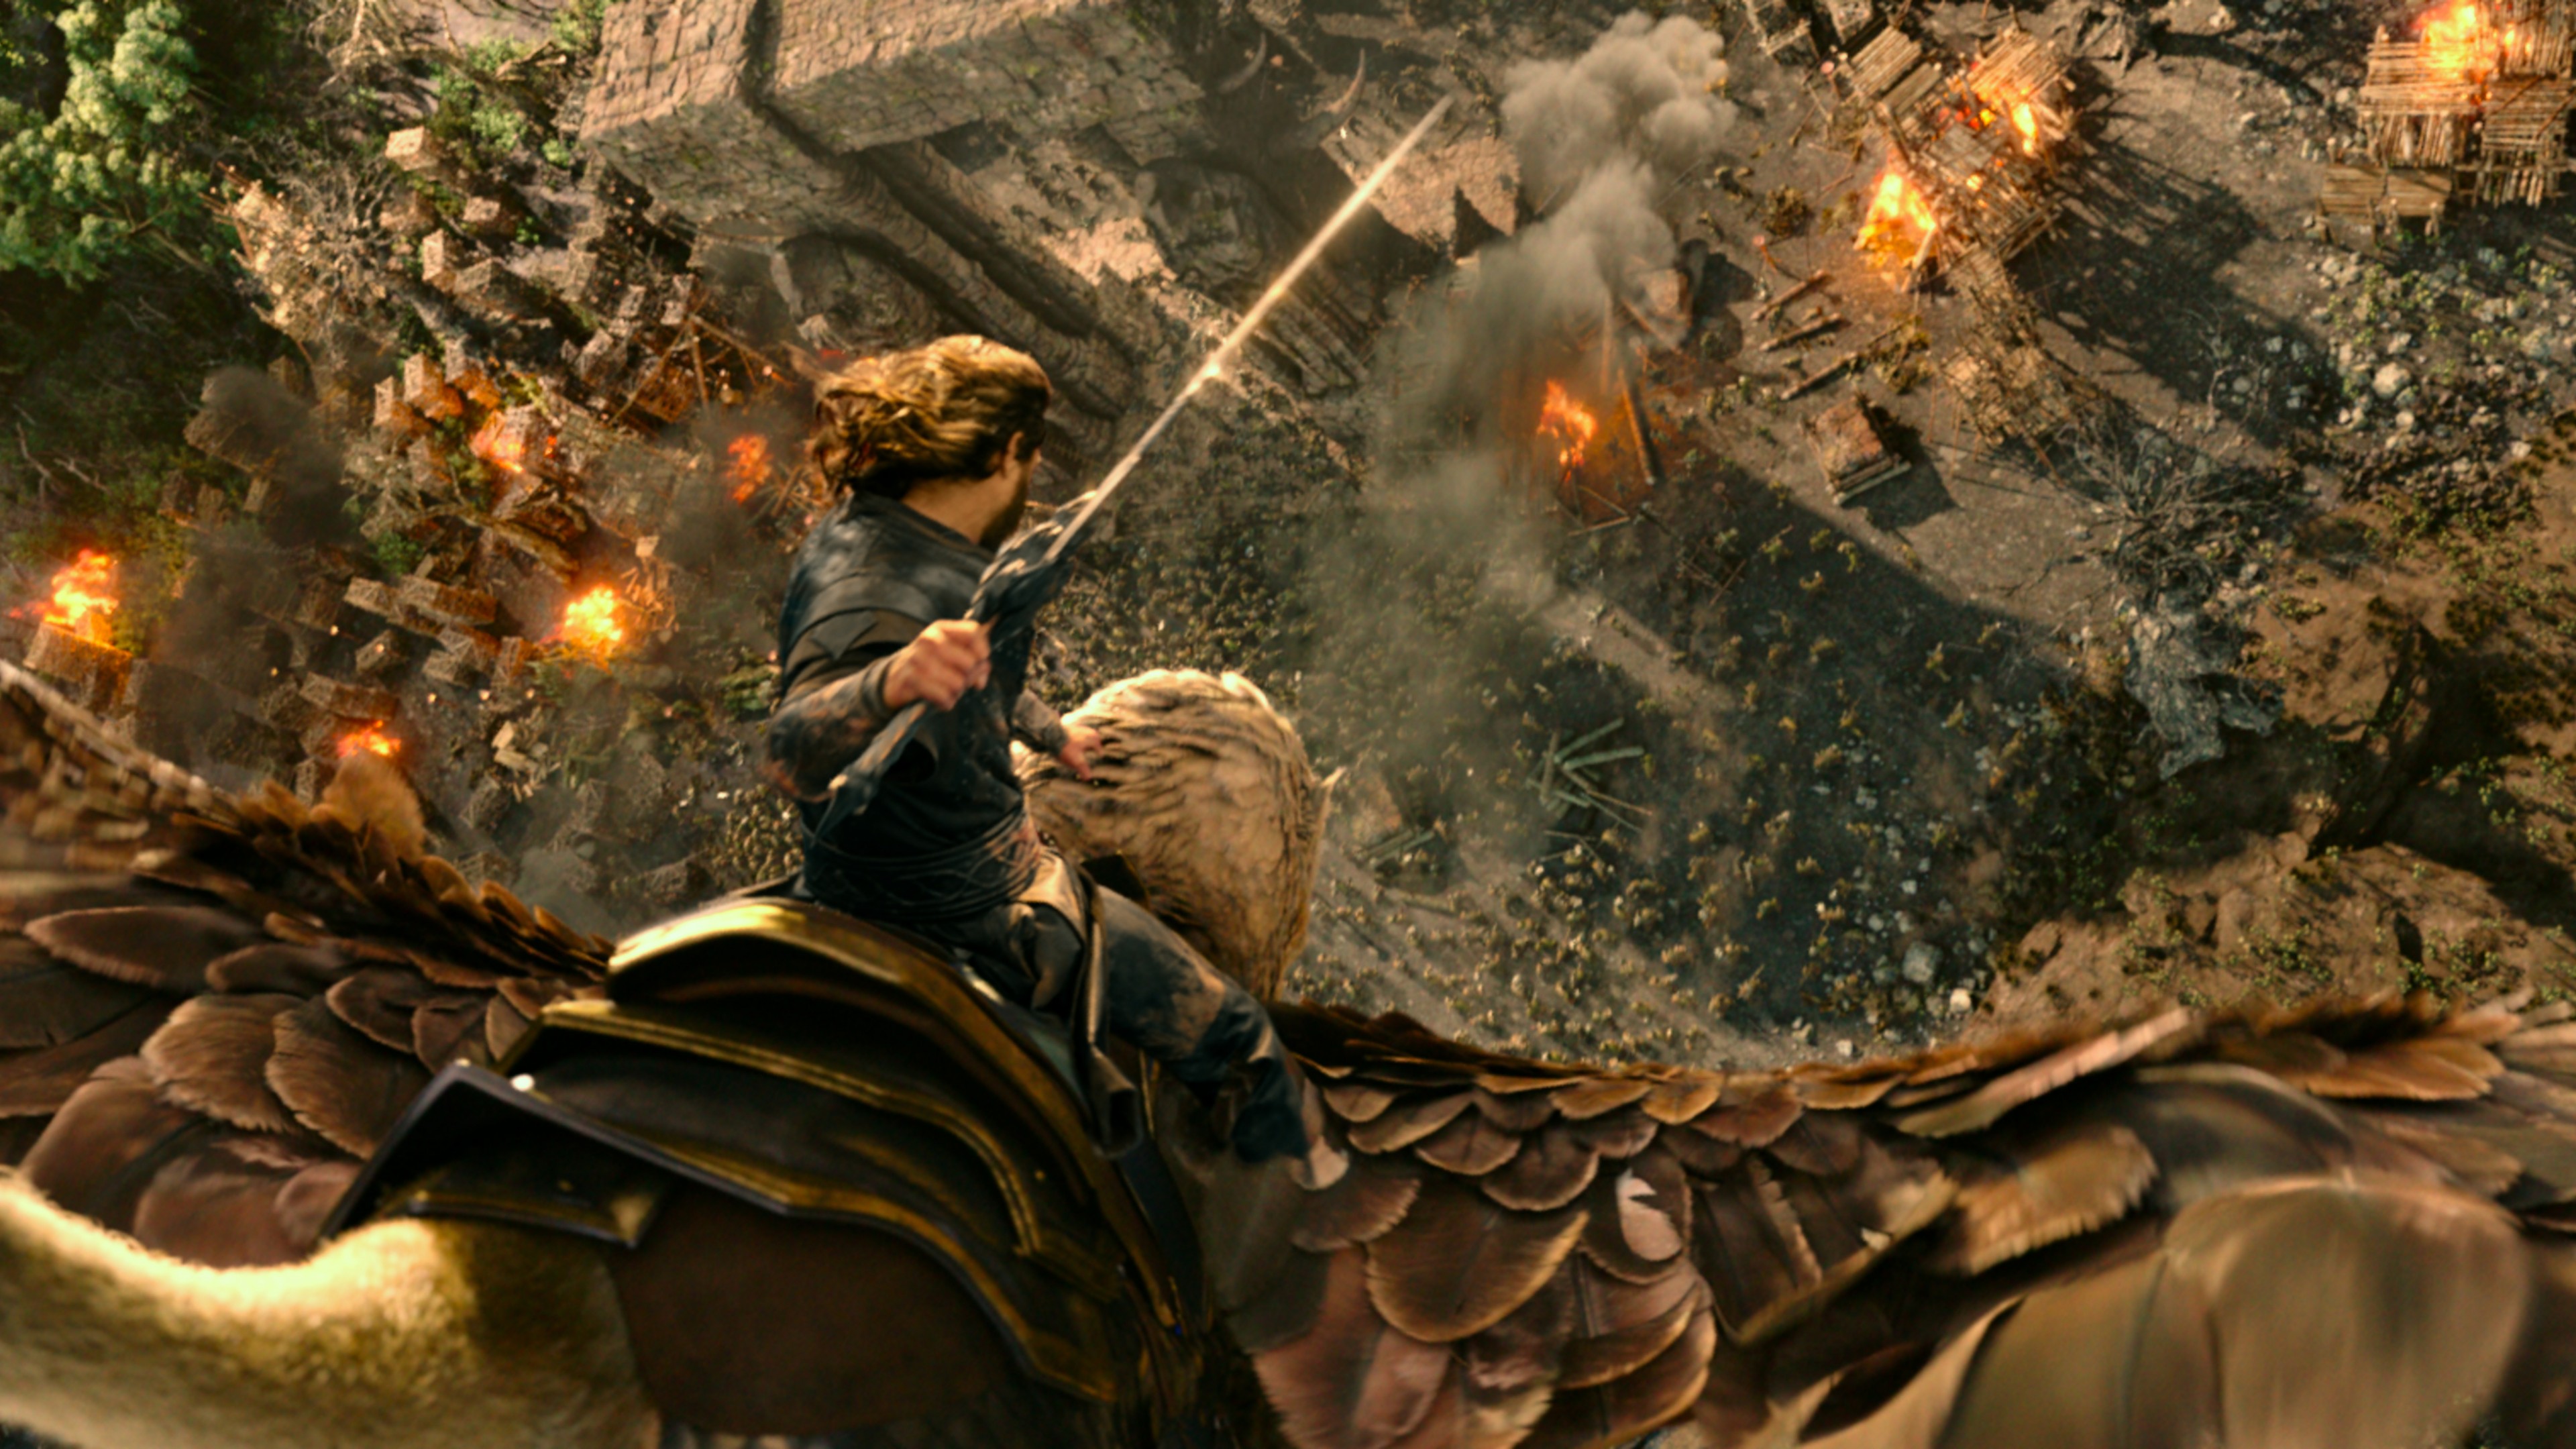 Warcraft Movie Background